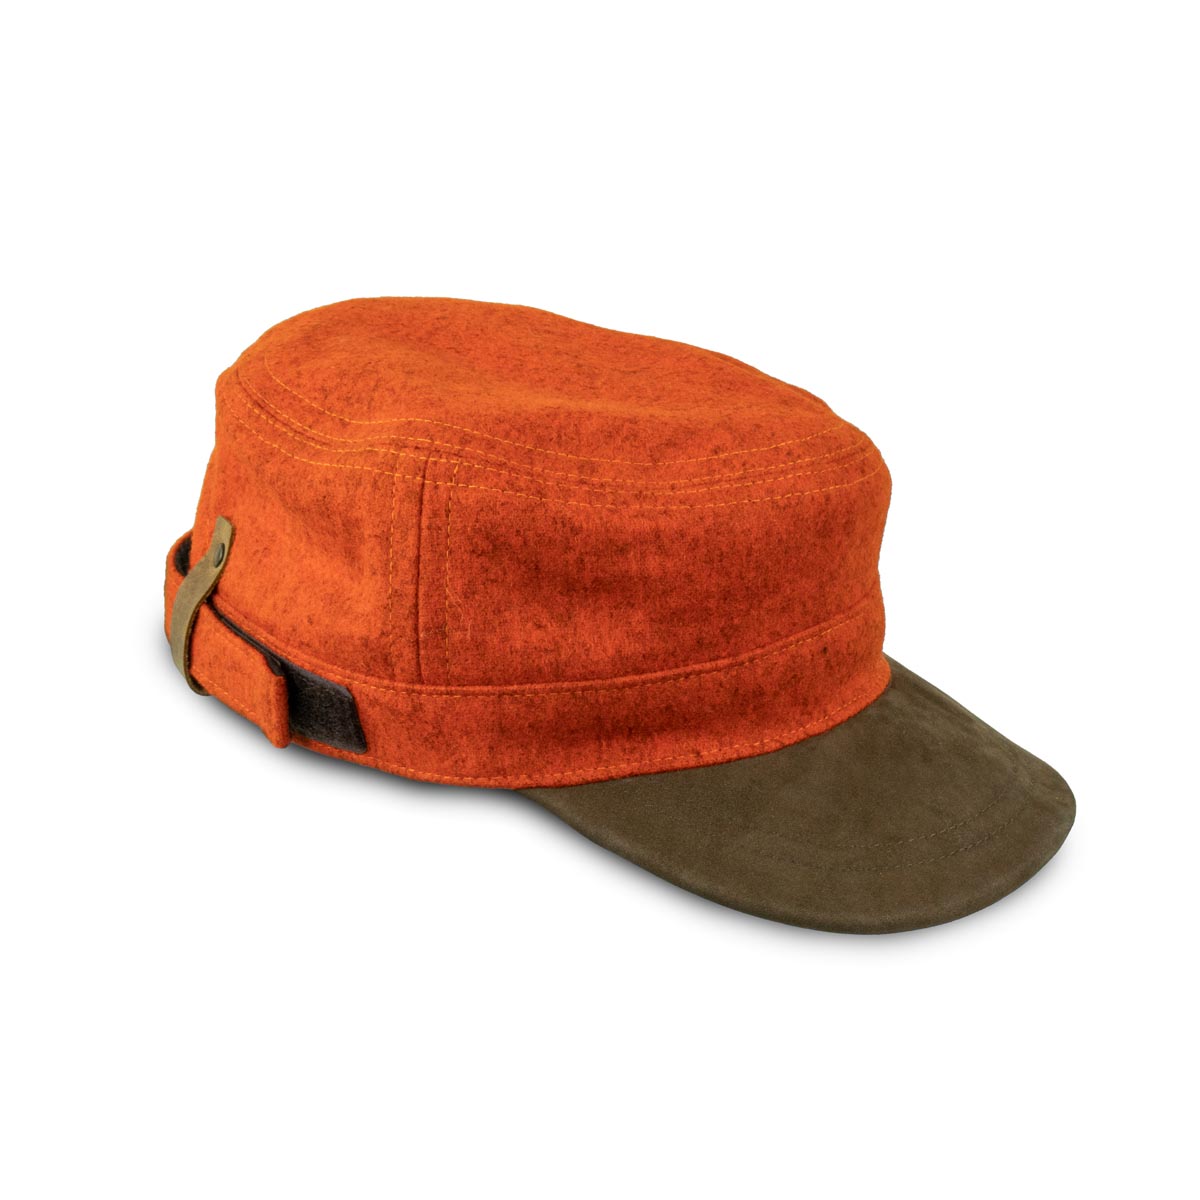 Loden Field Cap "Schirmling", Orange (wieder lieferbar Ende Februar)